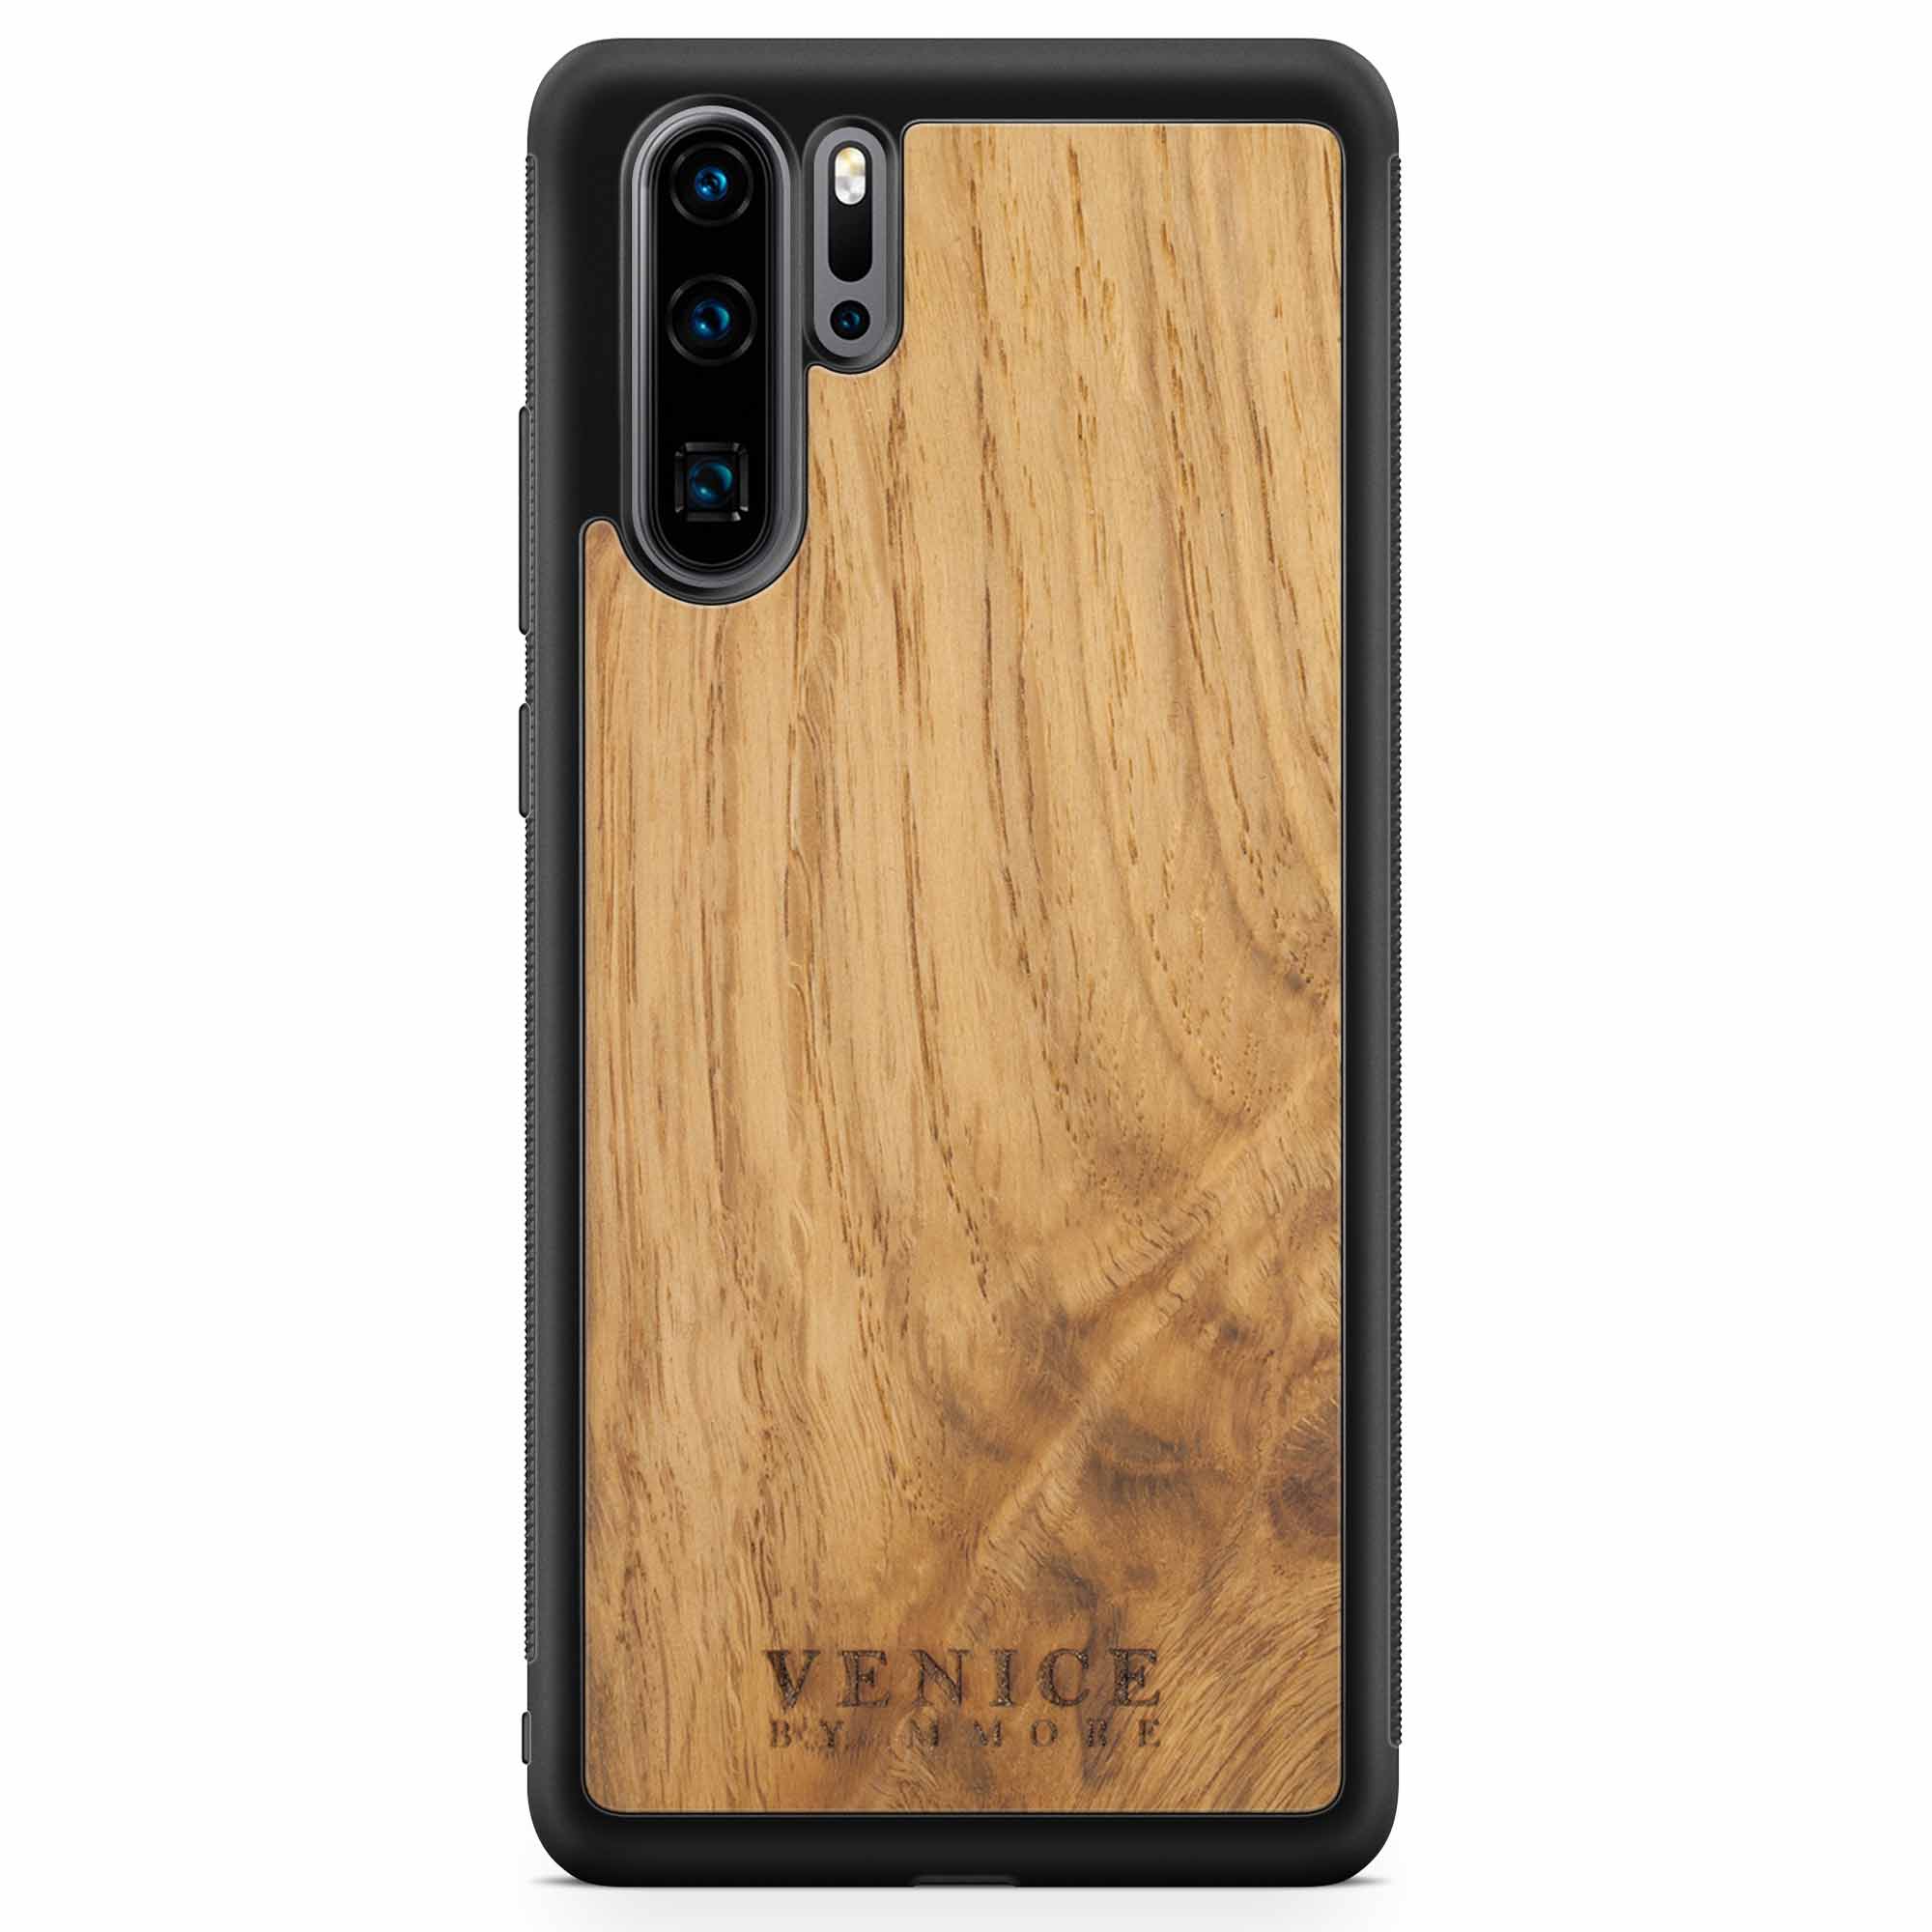 Деревянный чехол для телефона с надписью Venice Huawei P30 Pro